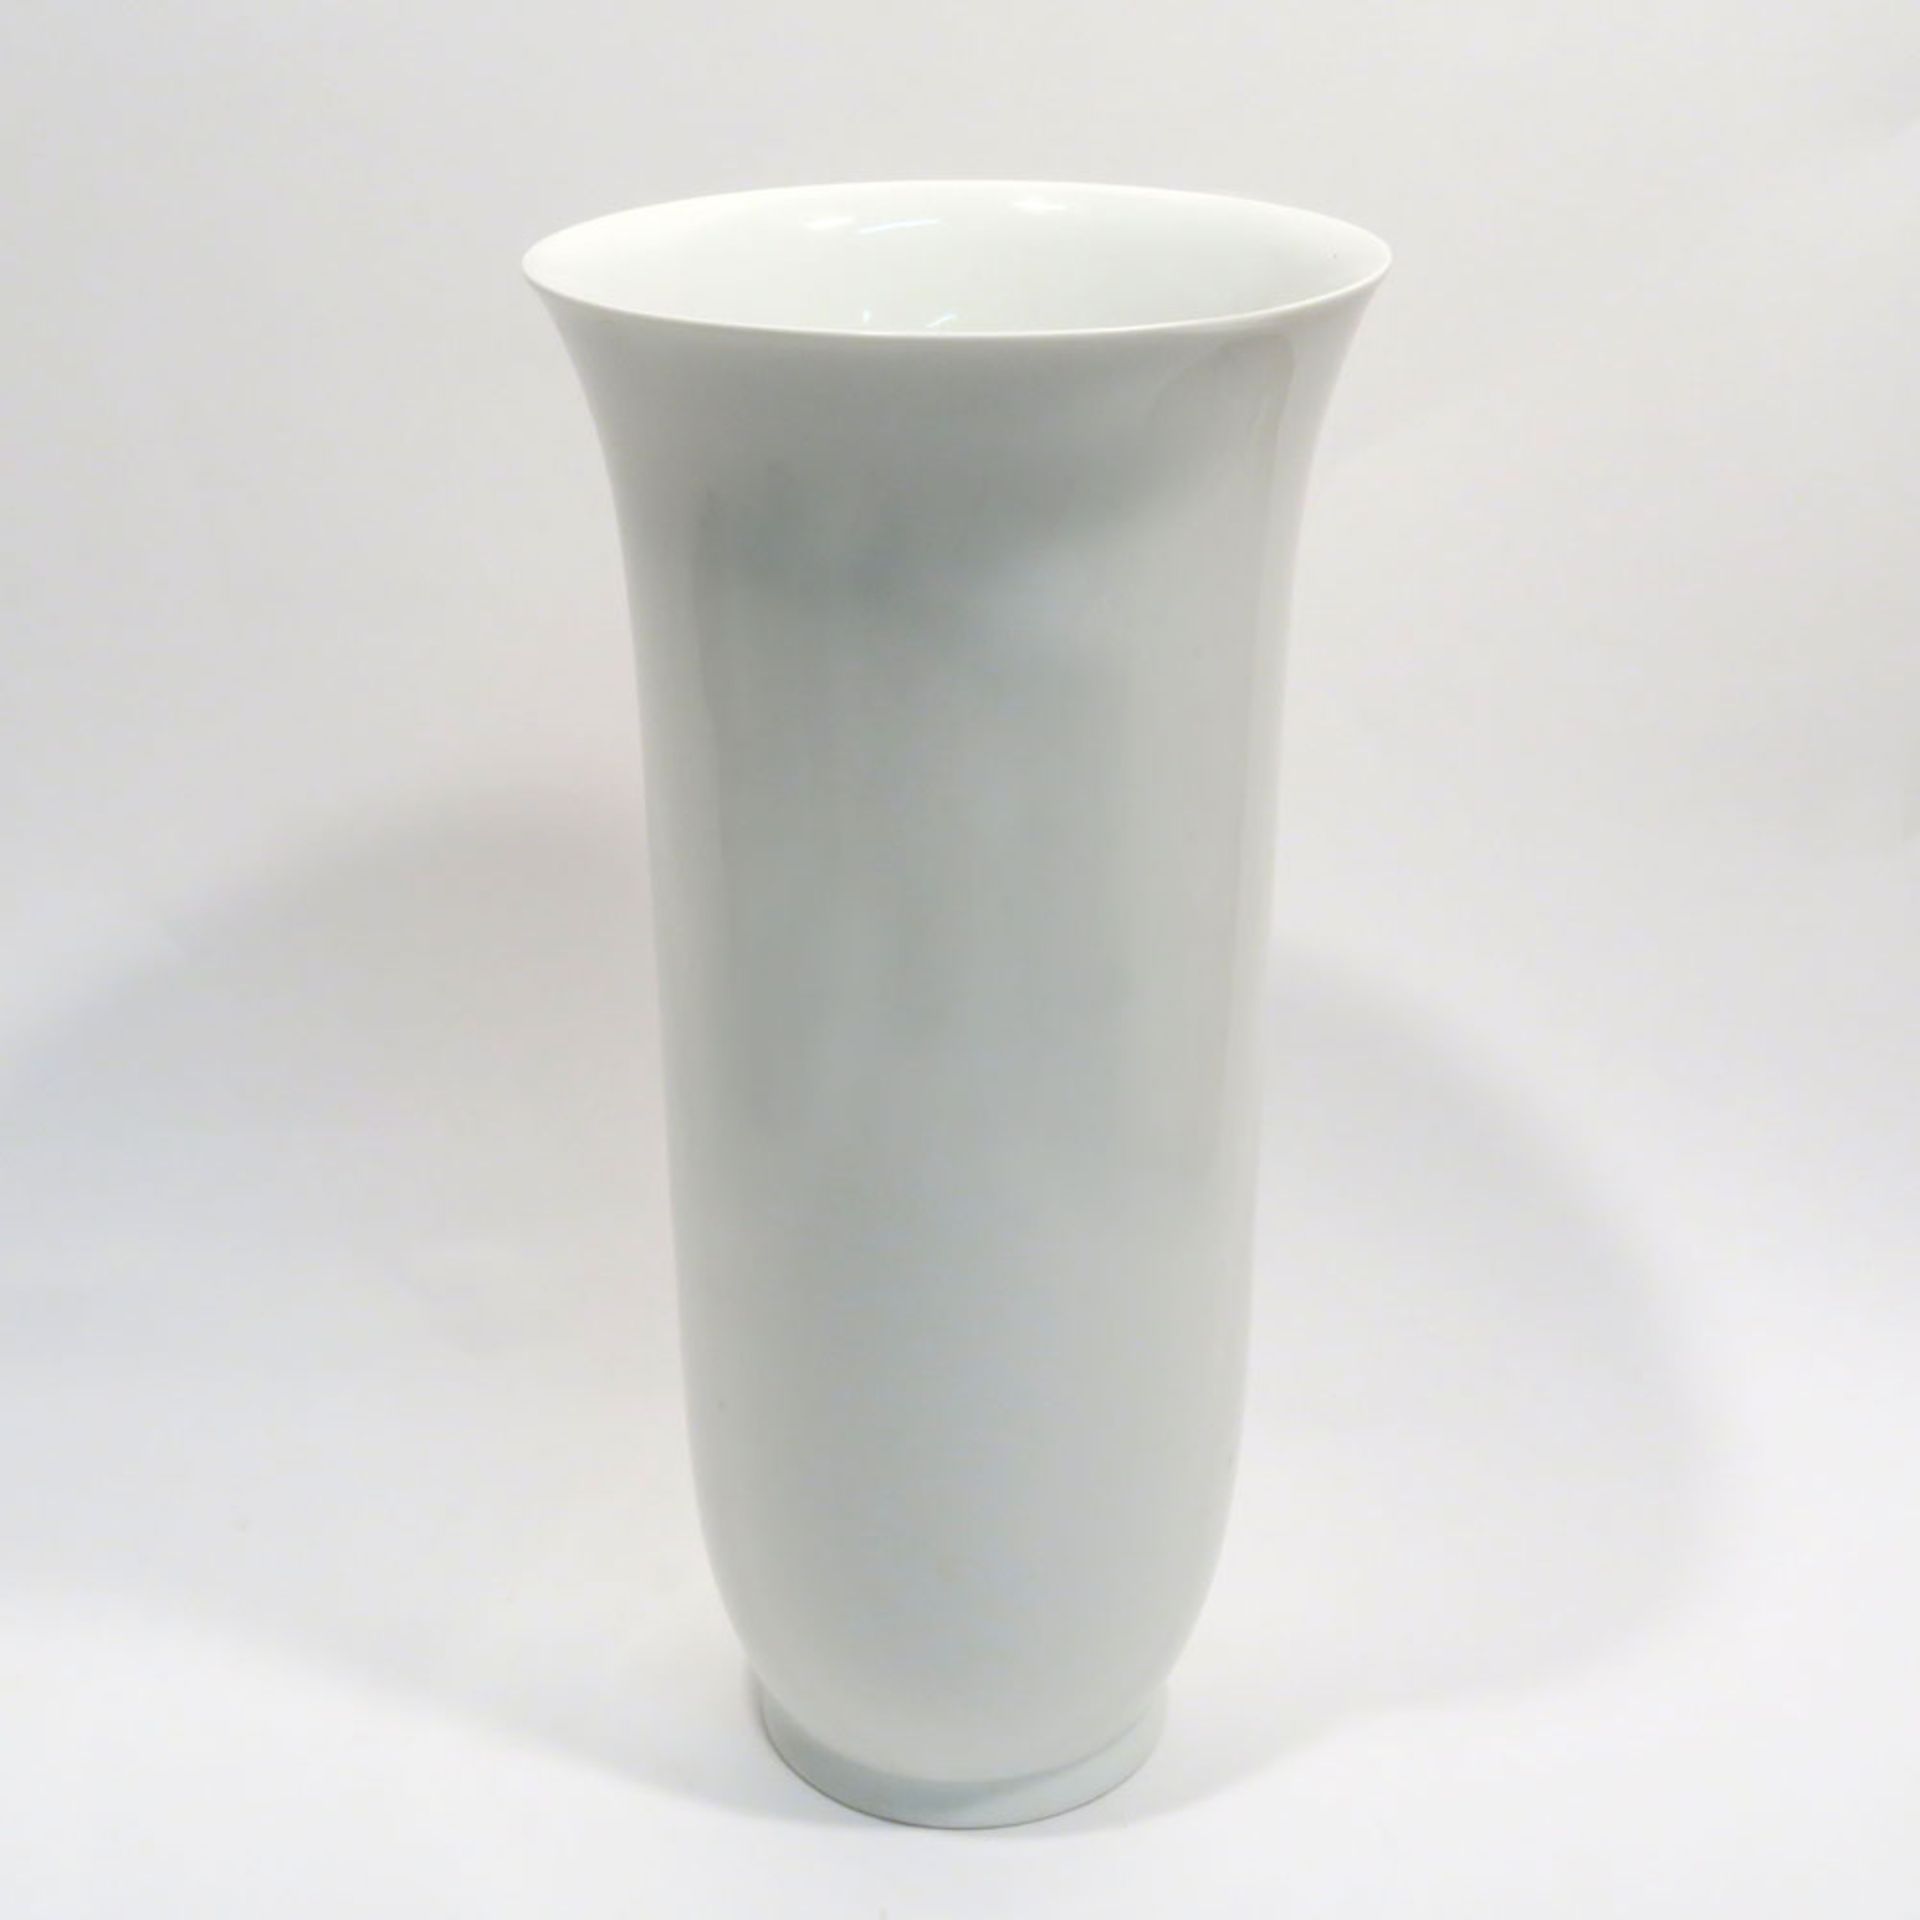 Große VaseKPM. Form "Flora". Weiß. Unterglasurblaue Szeptermarke. H. 33,7 cm.- - -26.00 % buyer's